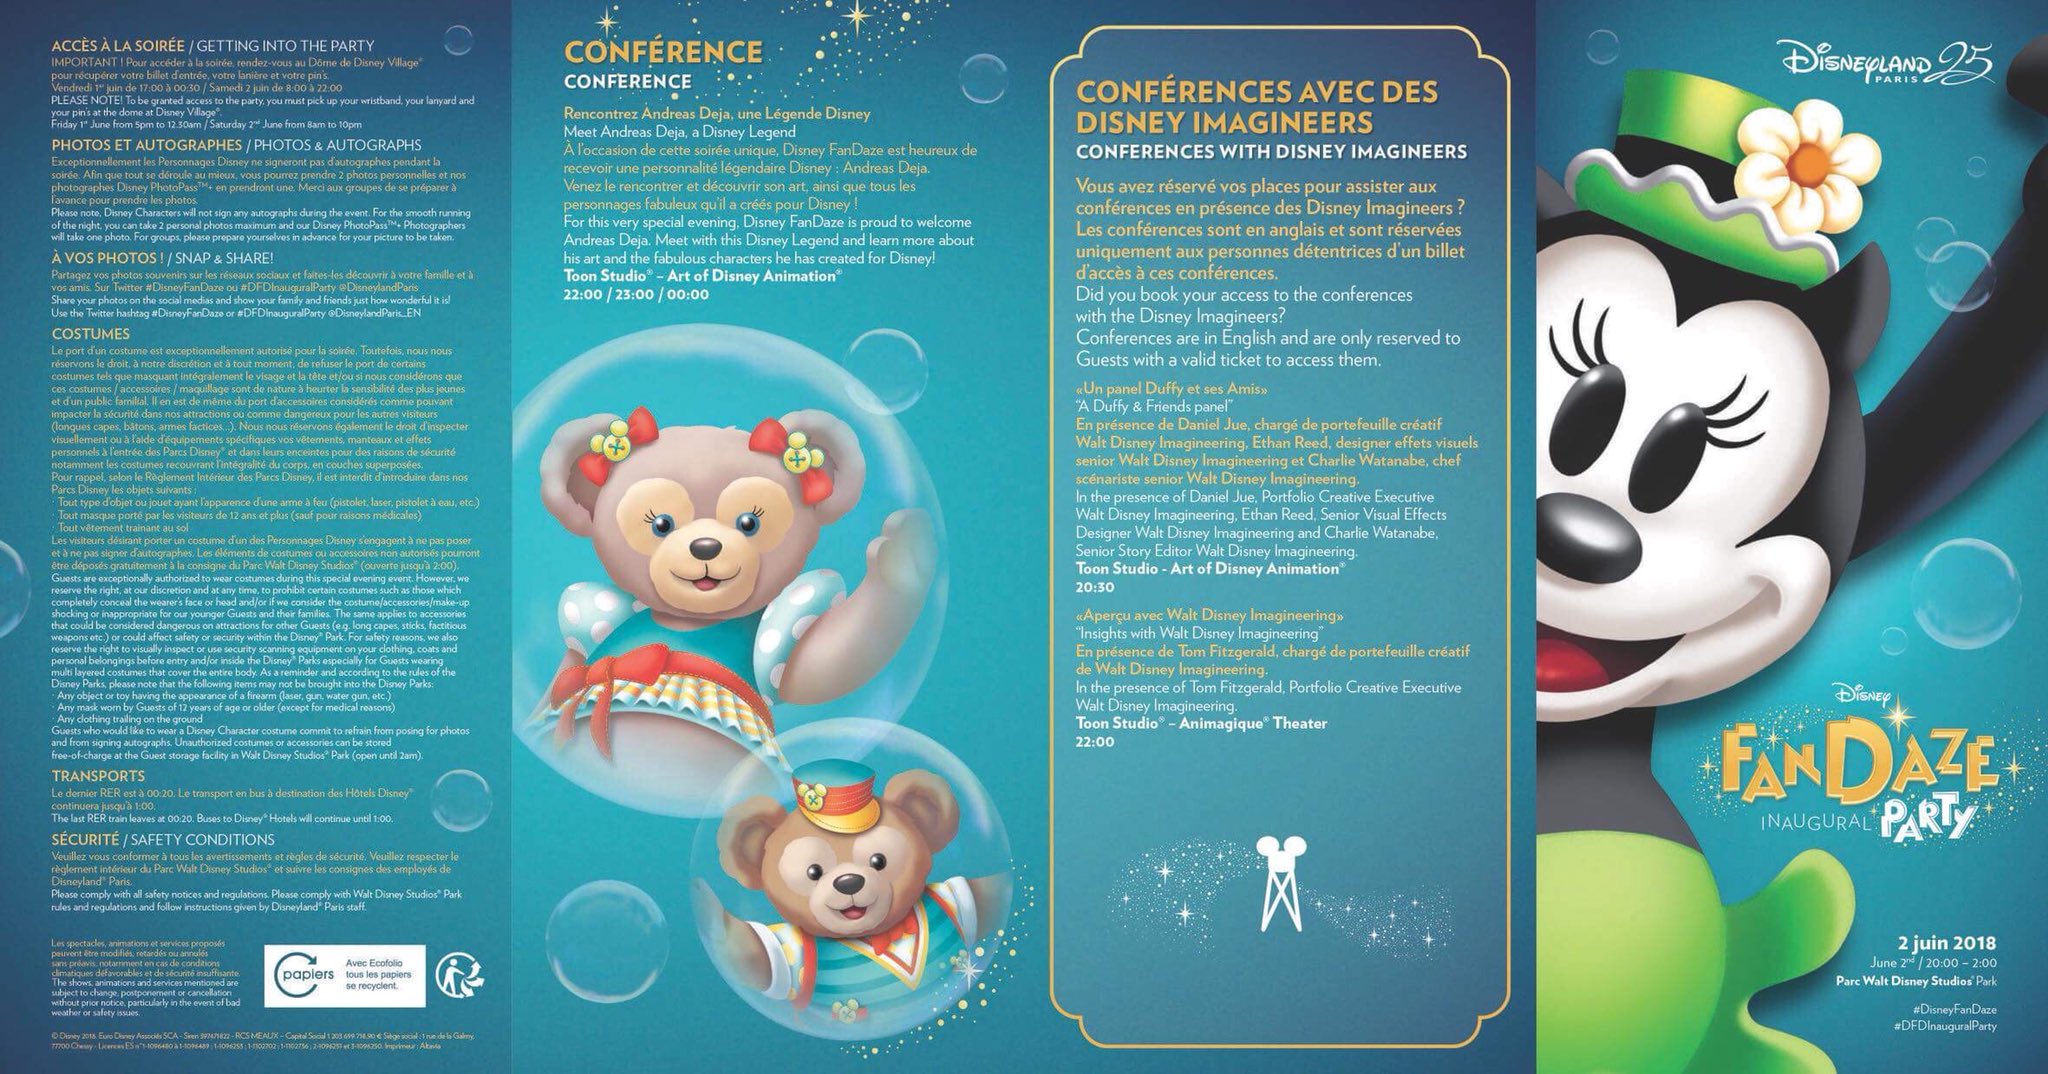 [Soirée] Disney FanDaze Inaugural Party (2 juin 2018) - Page 27 Img_2017